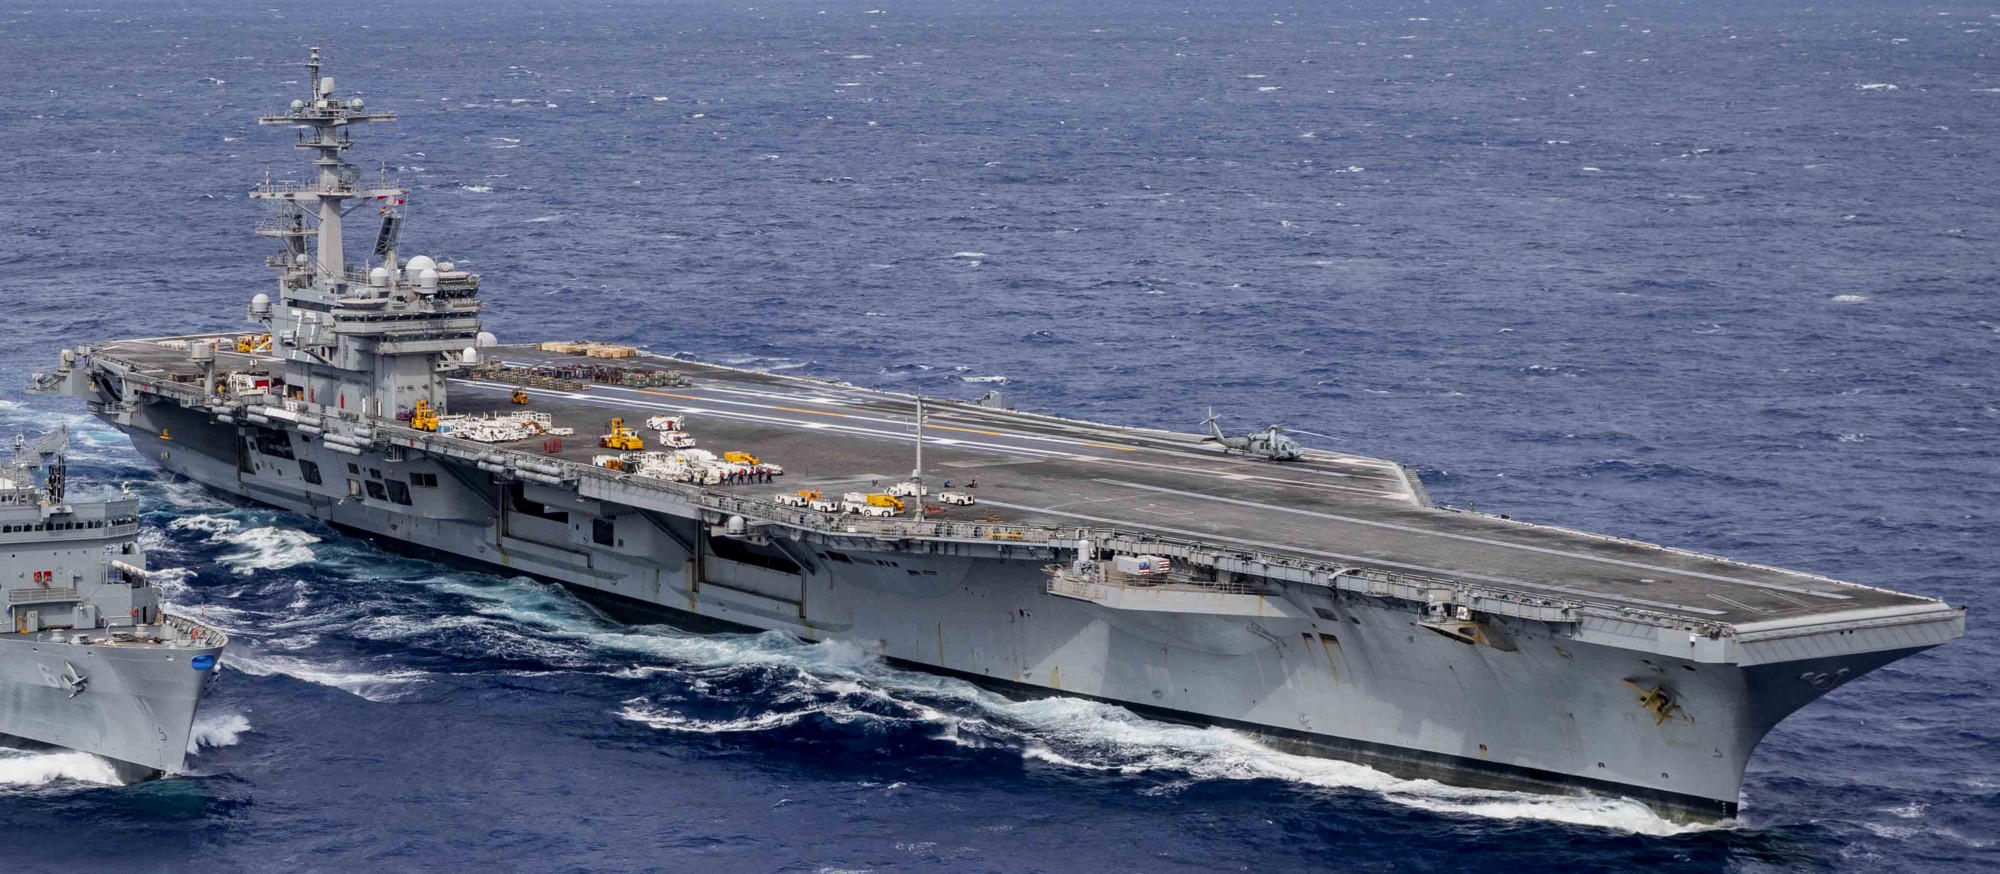 cvn-77 uss george h. w. bush aircraft carrier ammunition offload atlantic ocean 105